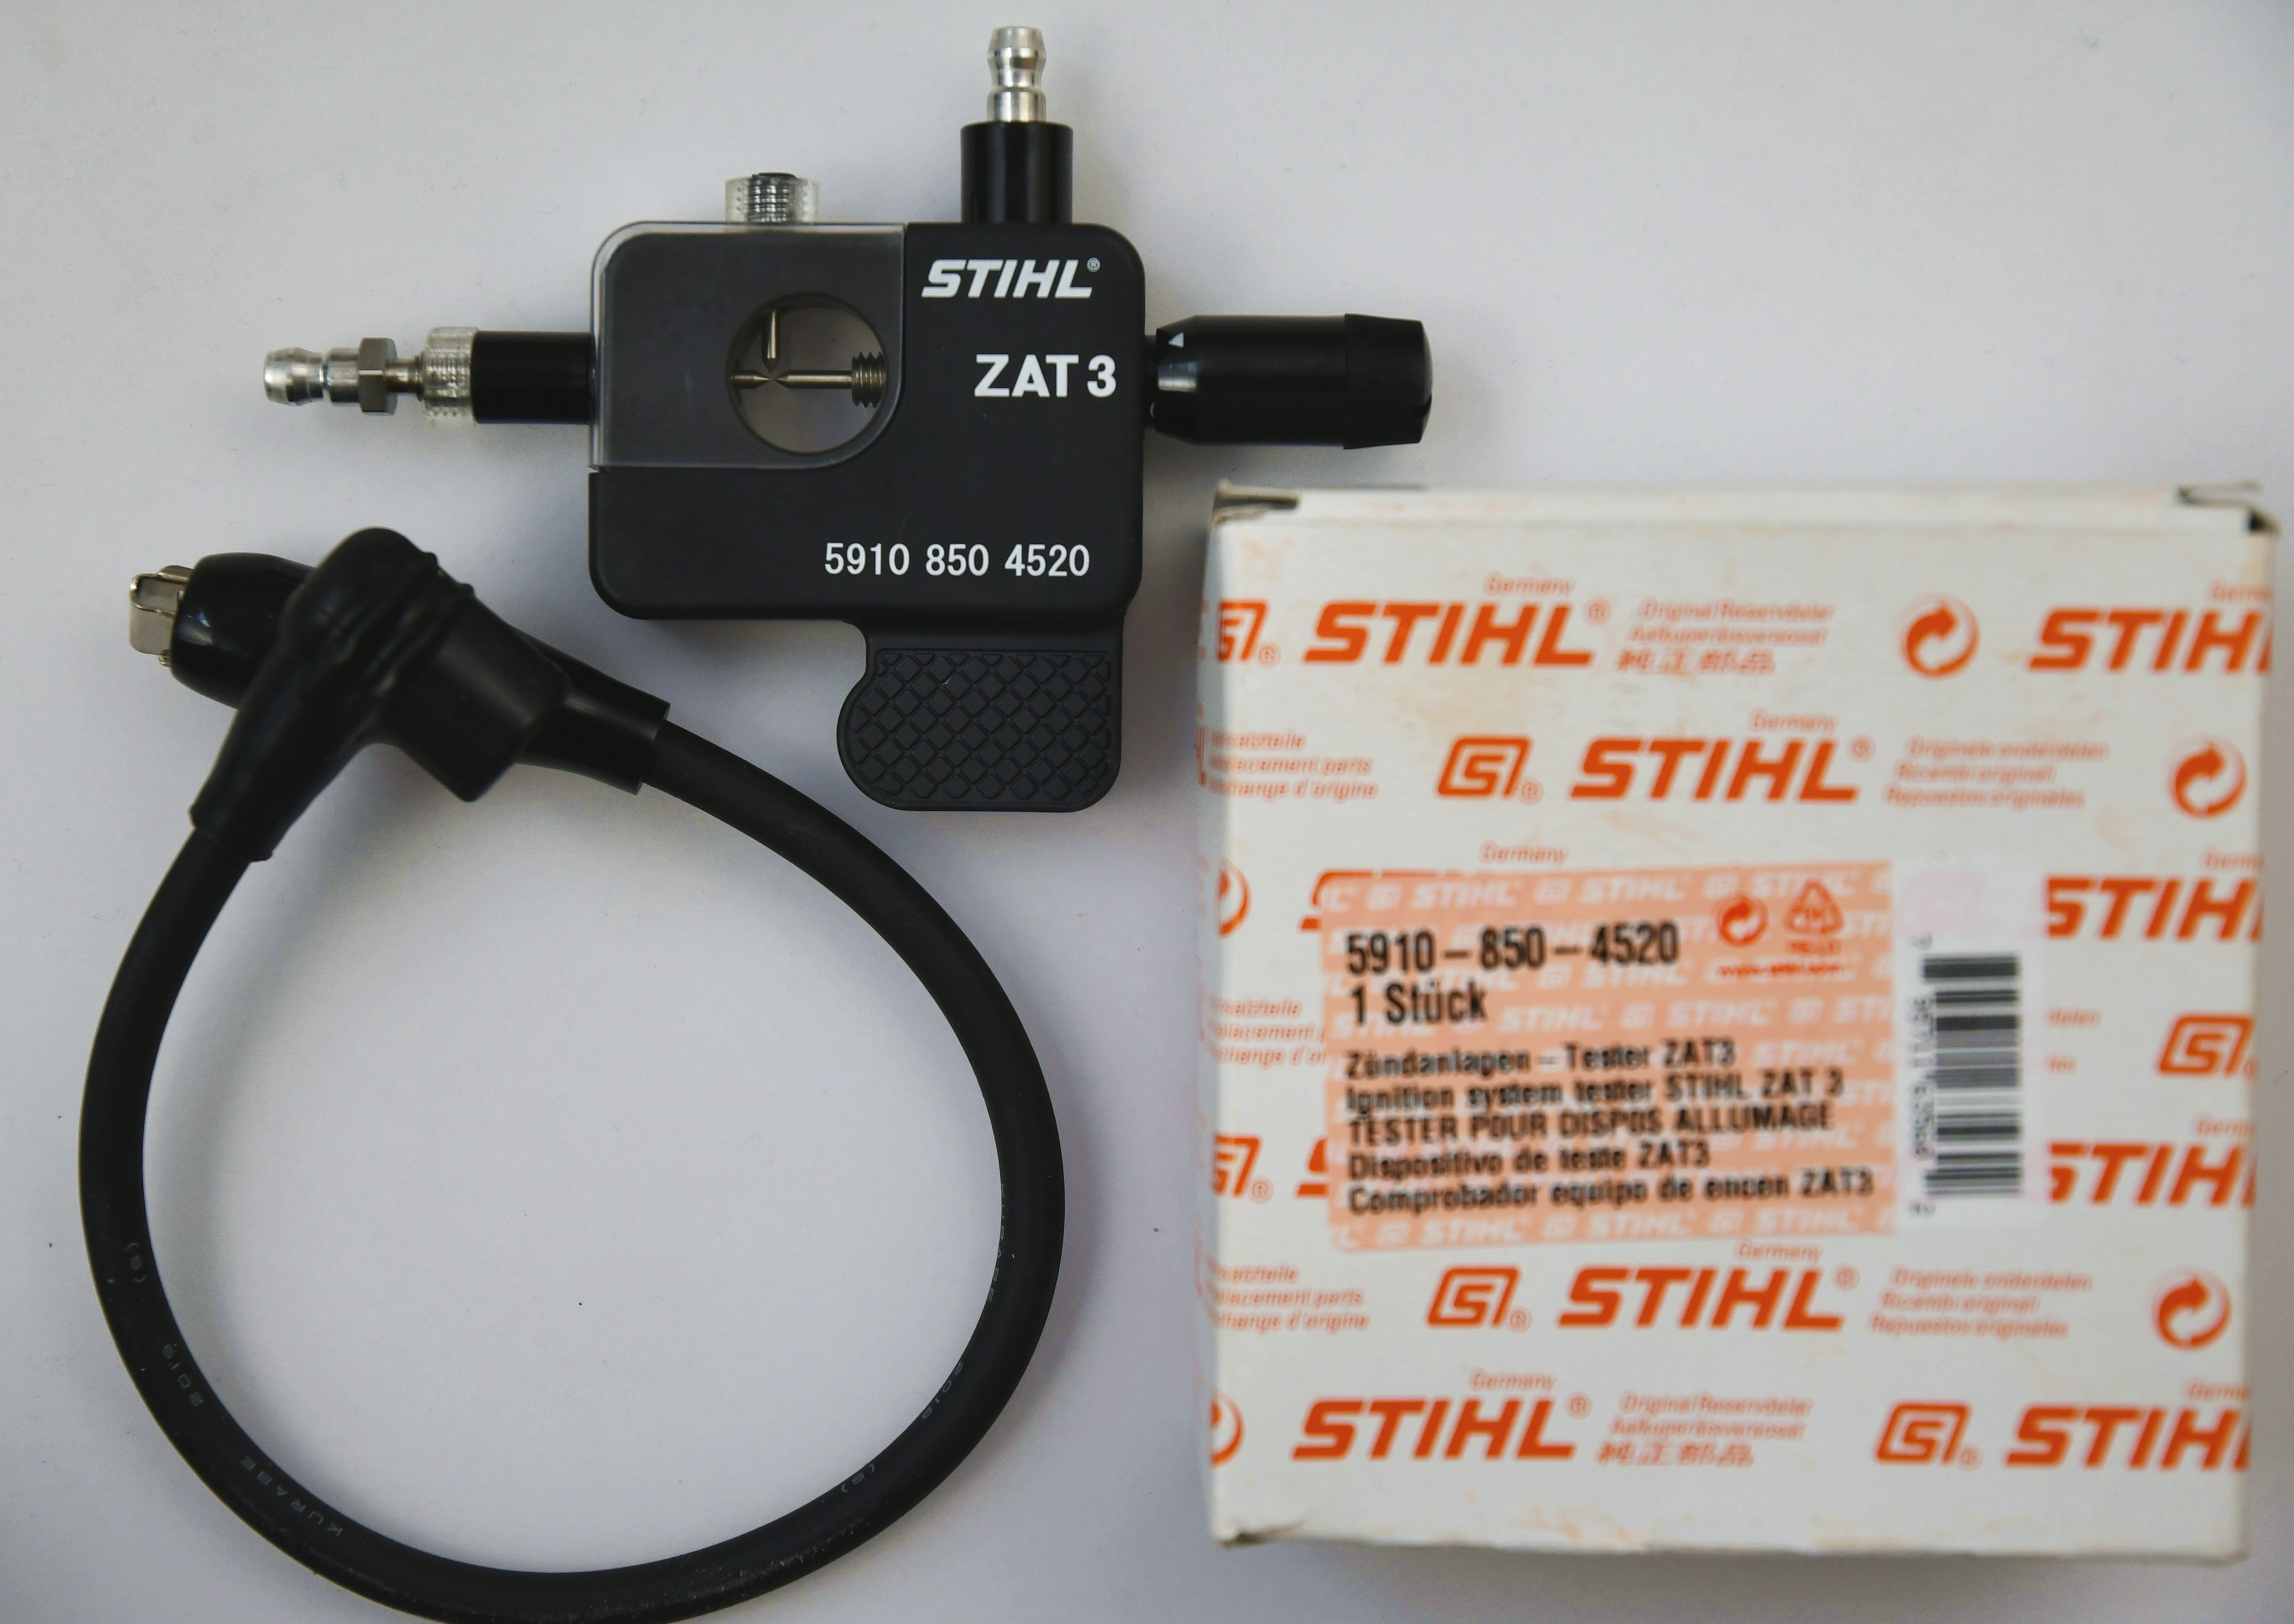  Stihl 59108504520  Original  Werkzeug ZAT3 Zündanlagentester Zündanlagenprüfer